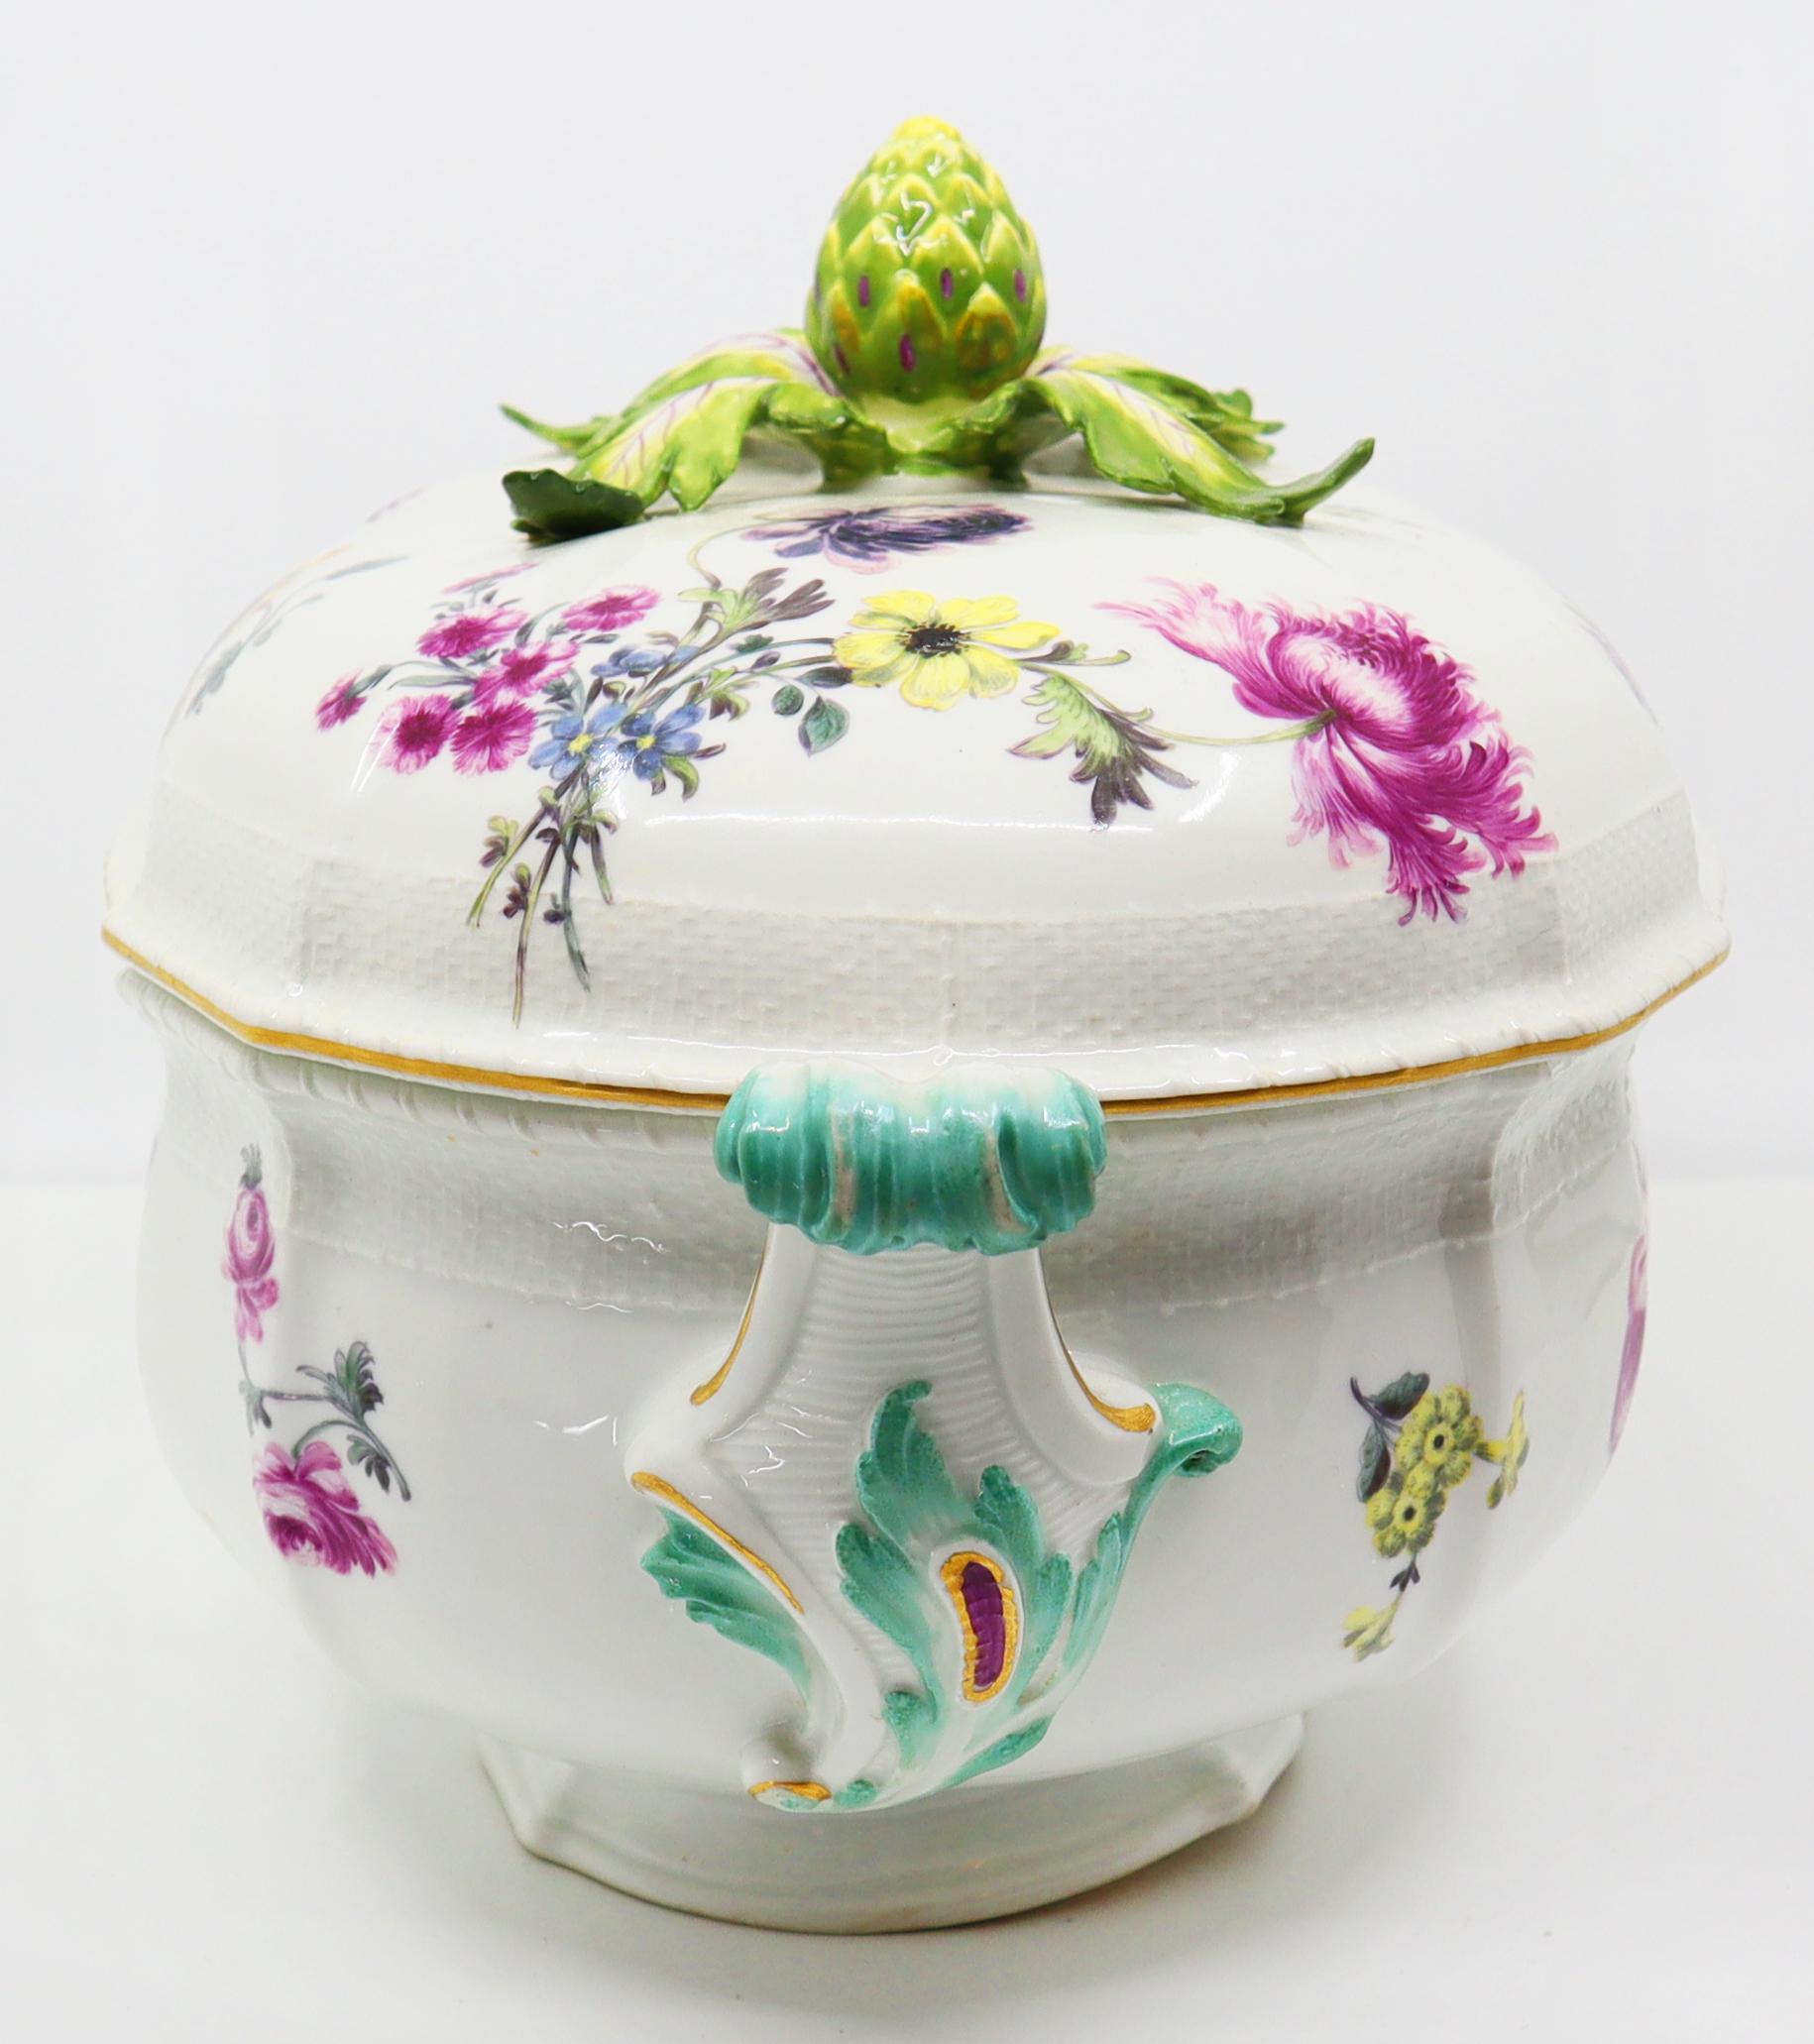 Magnifique bol convoité, fleurs et feuilles Meissen peintes à la main avec fleuron en forme d'artichaut et poignées peintes en turquoise,
Meissen, 19ème siècle, en très bon état
Dimensions : 30 L x 18 H x 15 P (approximatif).

*Expédition